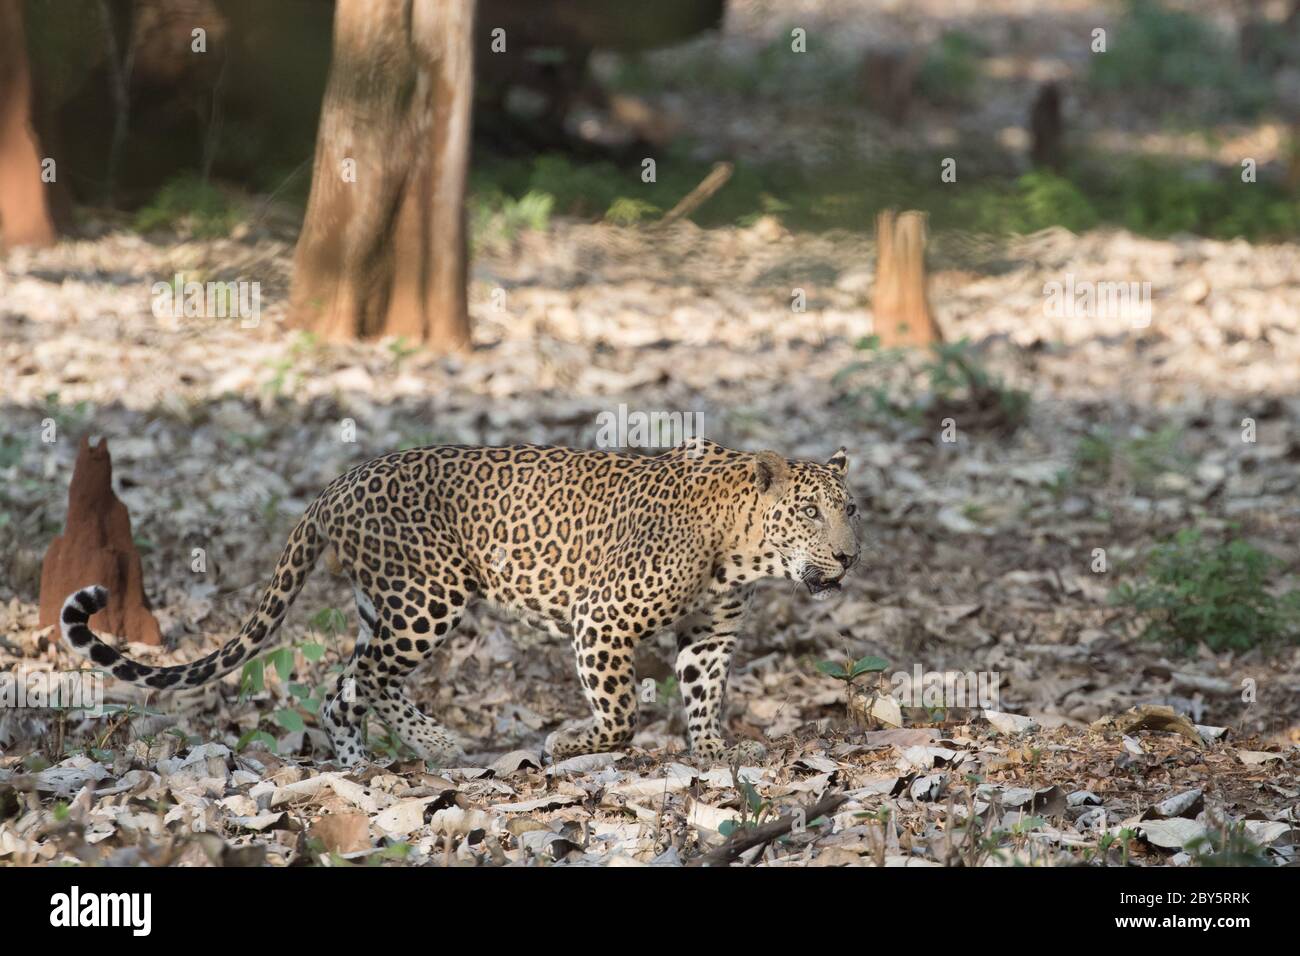 Randonnée léopard dans lumière dorée avec des bois en arrière-plan, avec visage agressif dans un magnifique fond de jungle. Banque D'Images